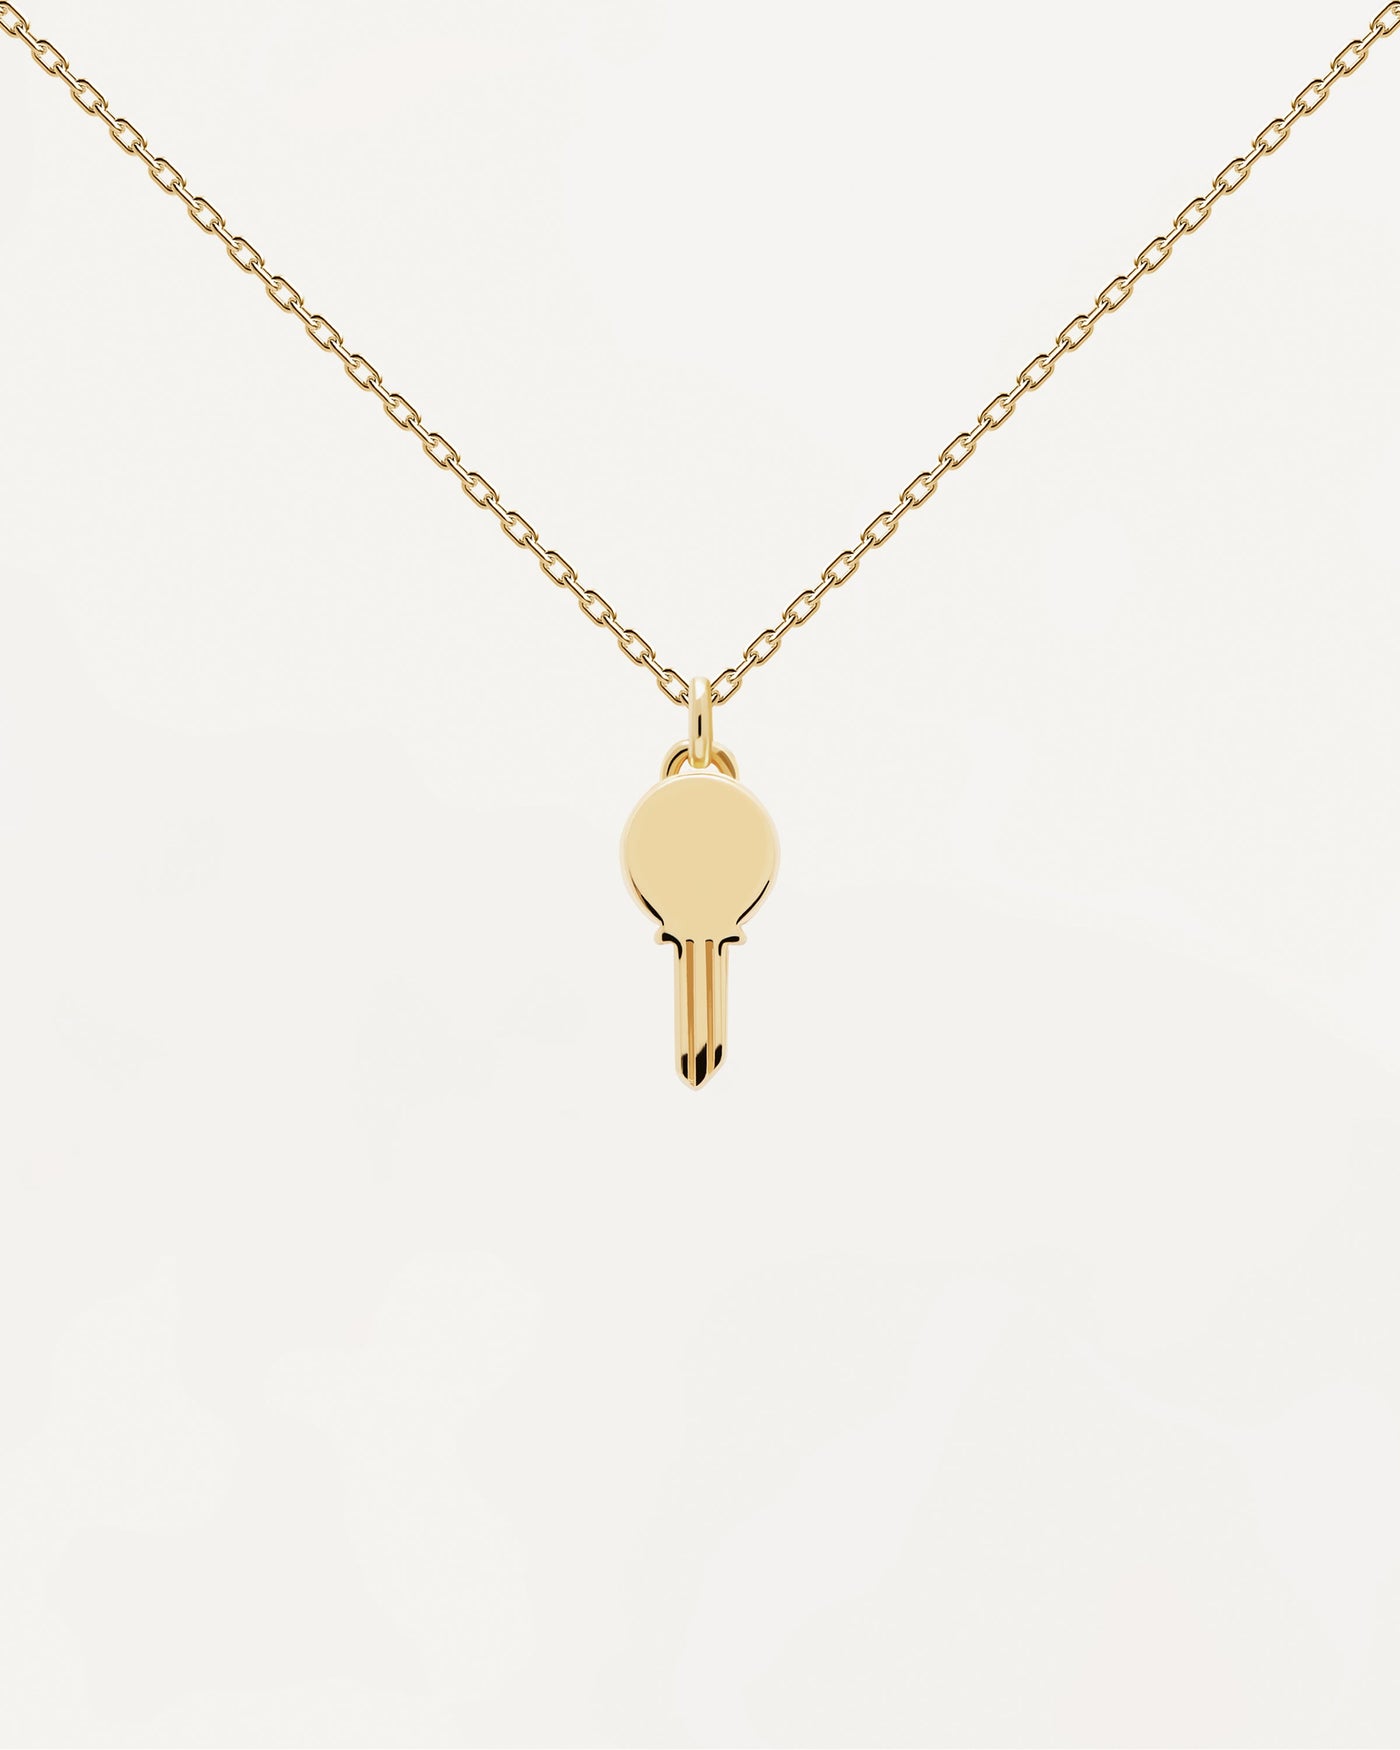 Eternum Halskette. Goldverzerrte silberne Halskette mit personalisiertem Schlüsselanhänger zum Eingravieren. Erhalten Sie die neuesten Produkte von PDPAOLA. Geben Sie Ihre Bestellung sicher auf und erhalten Sie diesen Bestseller.